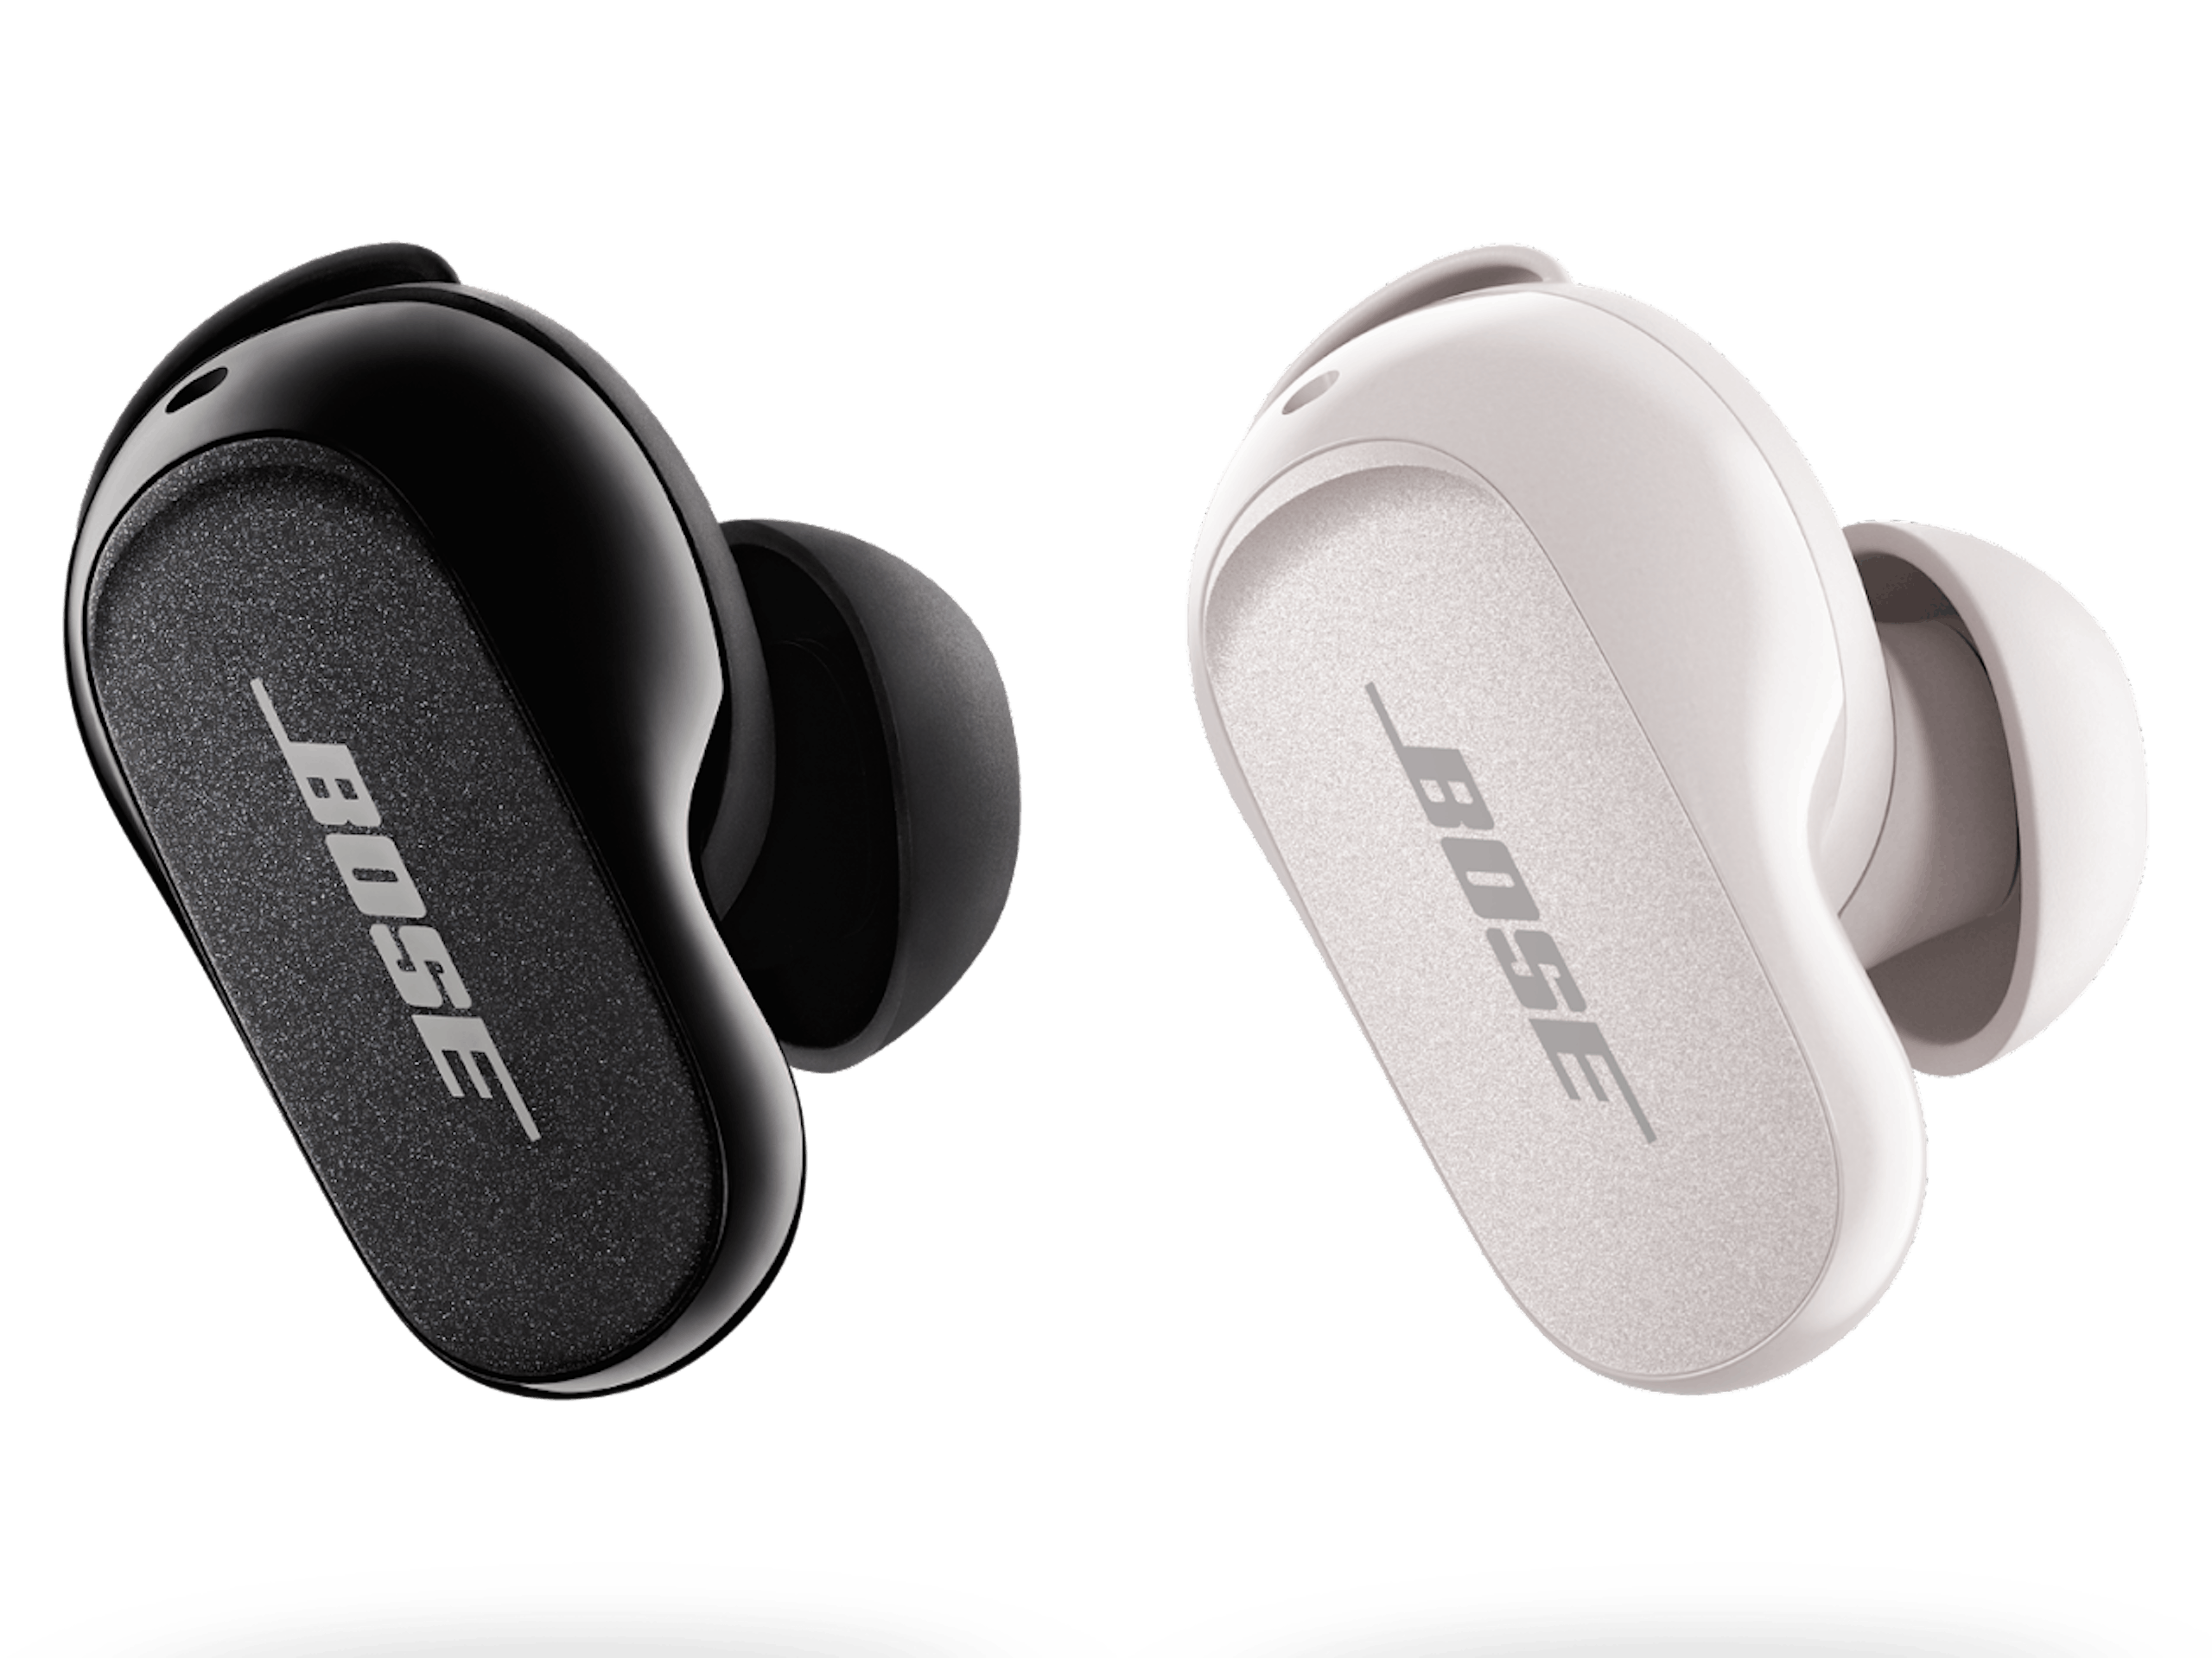 Bose 推出新一代QuietComfort Earbuds II 消噪耳塞，尺寸縮減1/3 、並